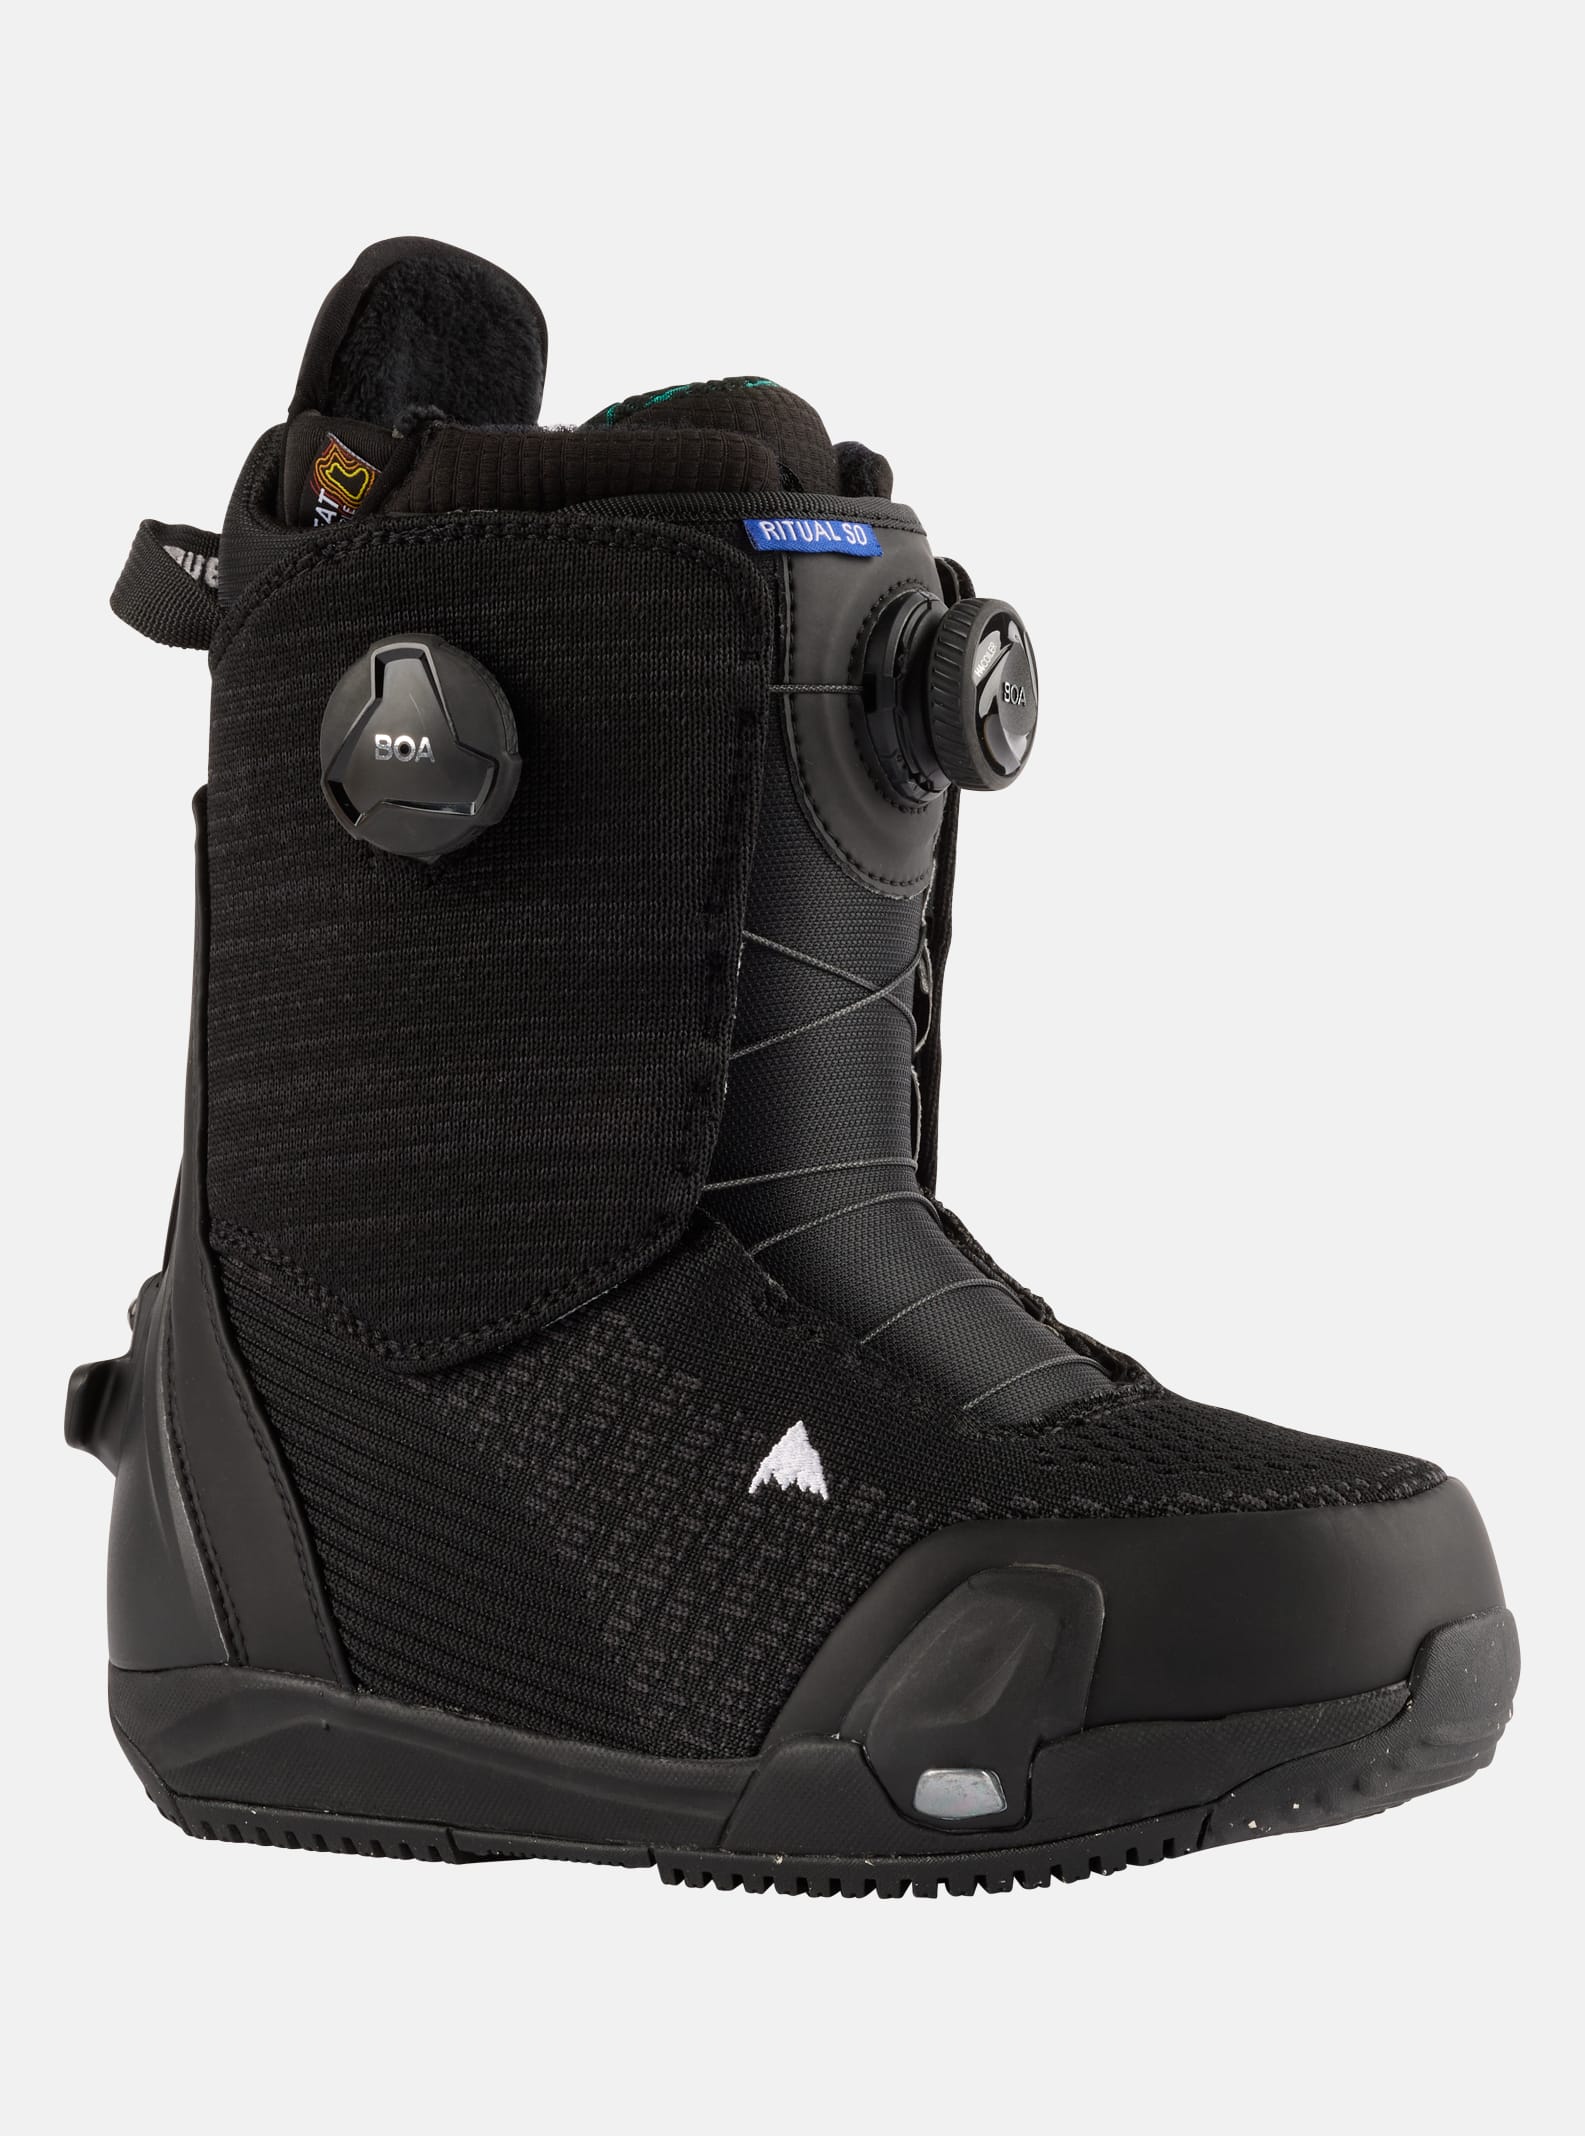 BOA® Snowboard Boots | Burton Snowboards SI